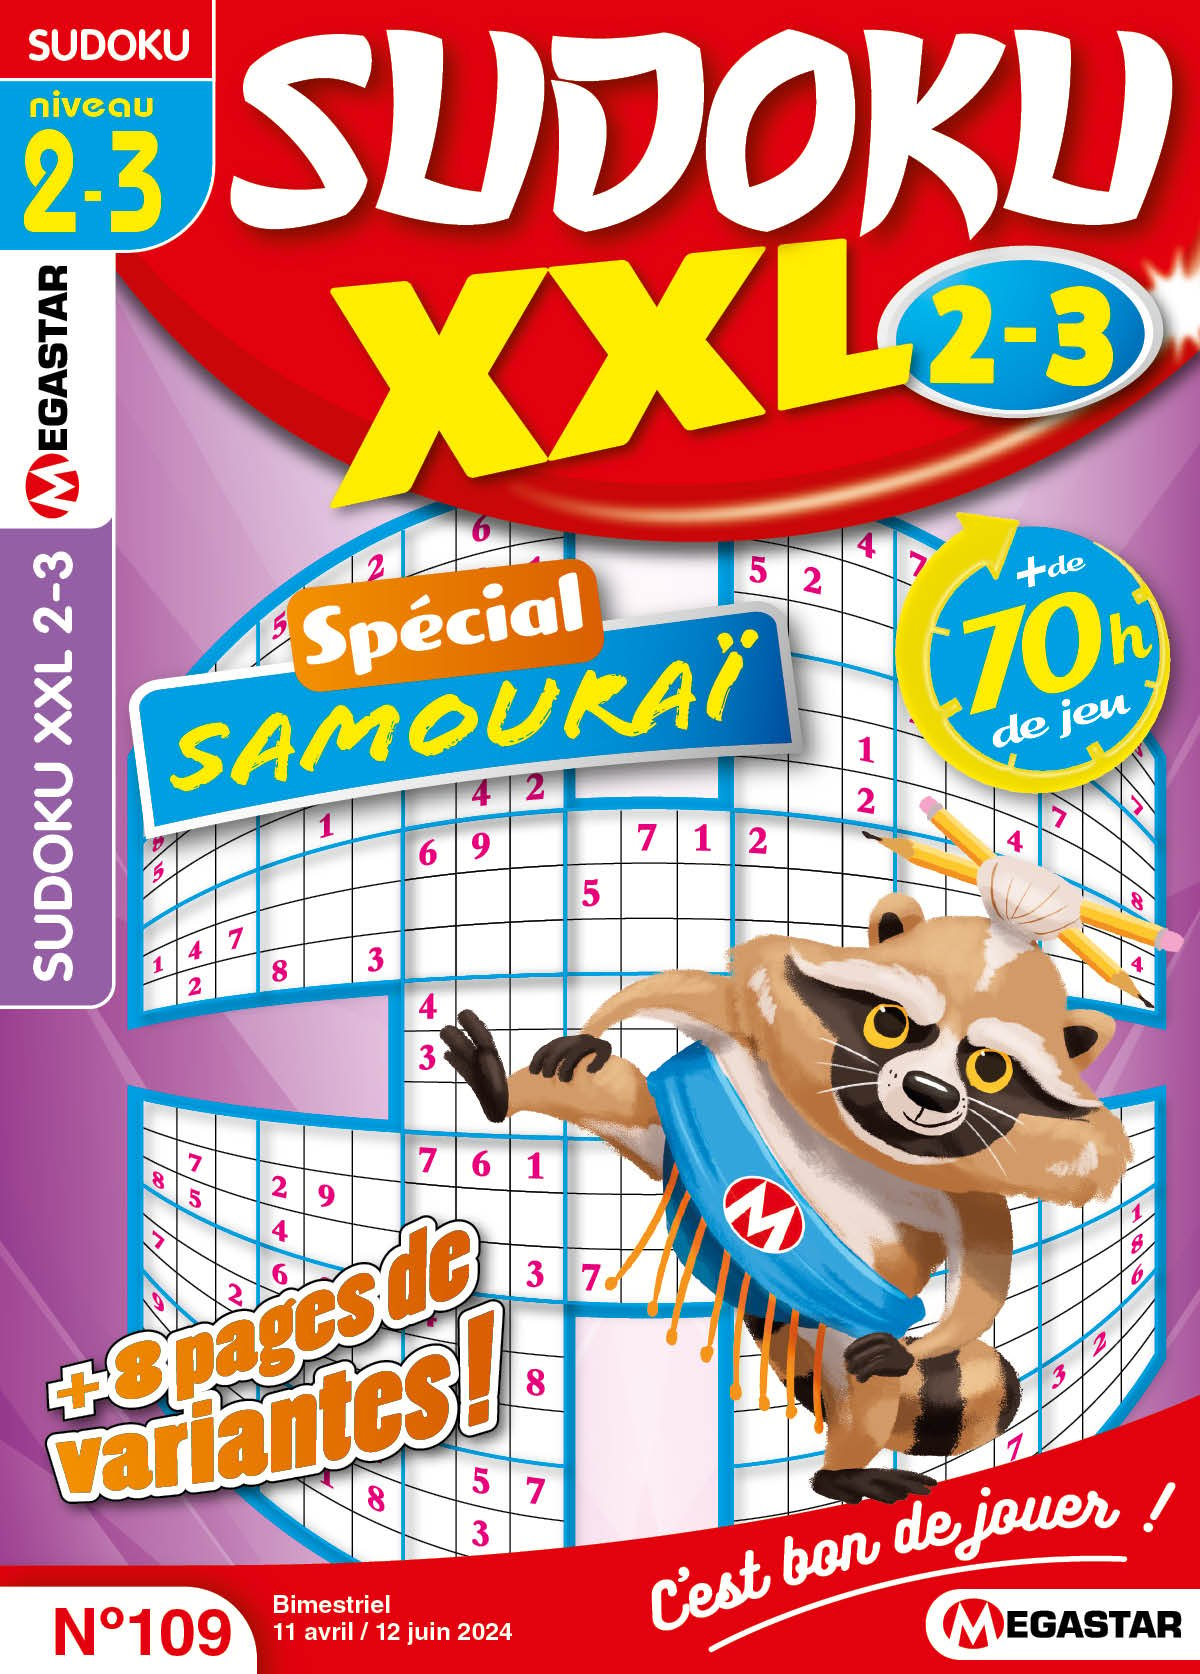 Sudoku XXL 2-3 Numéro 109